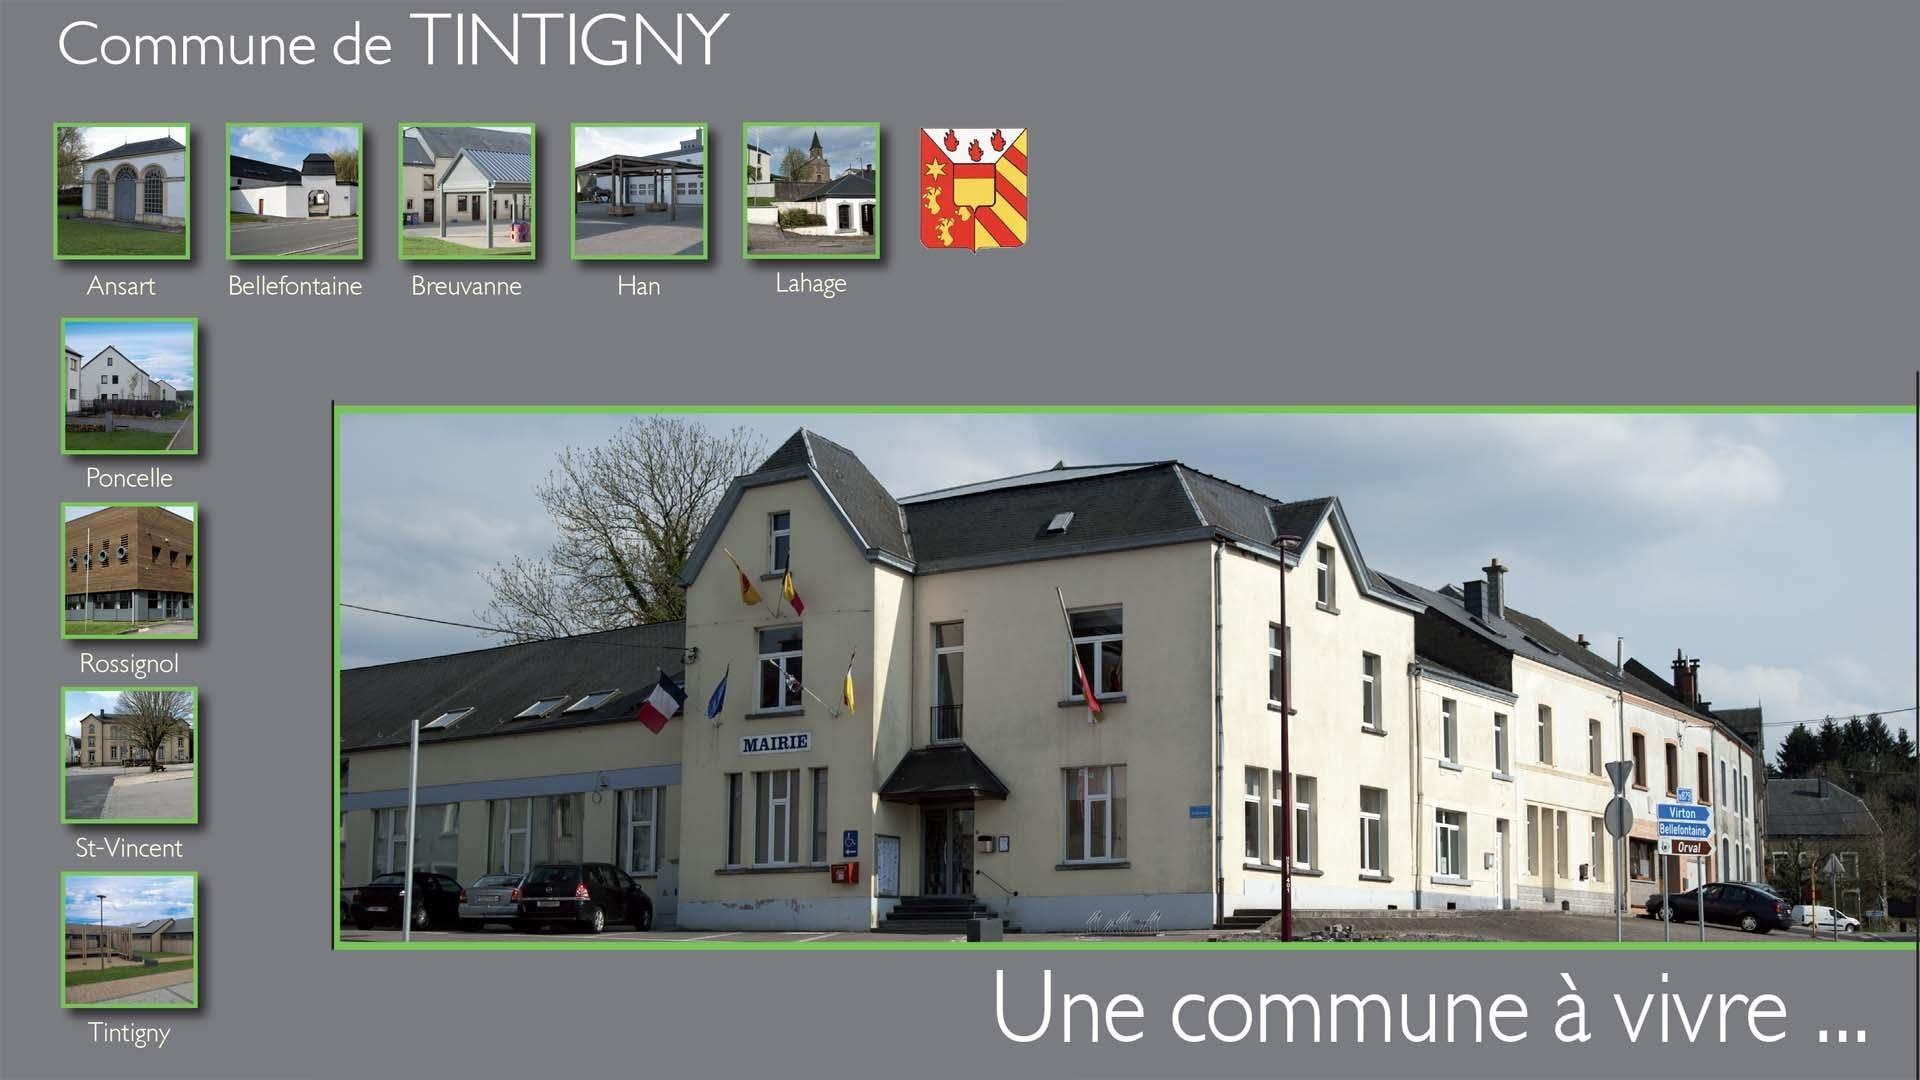 La Commune de Tintigny, un espace où il fait bon vivre !